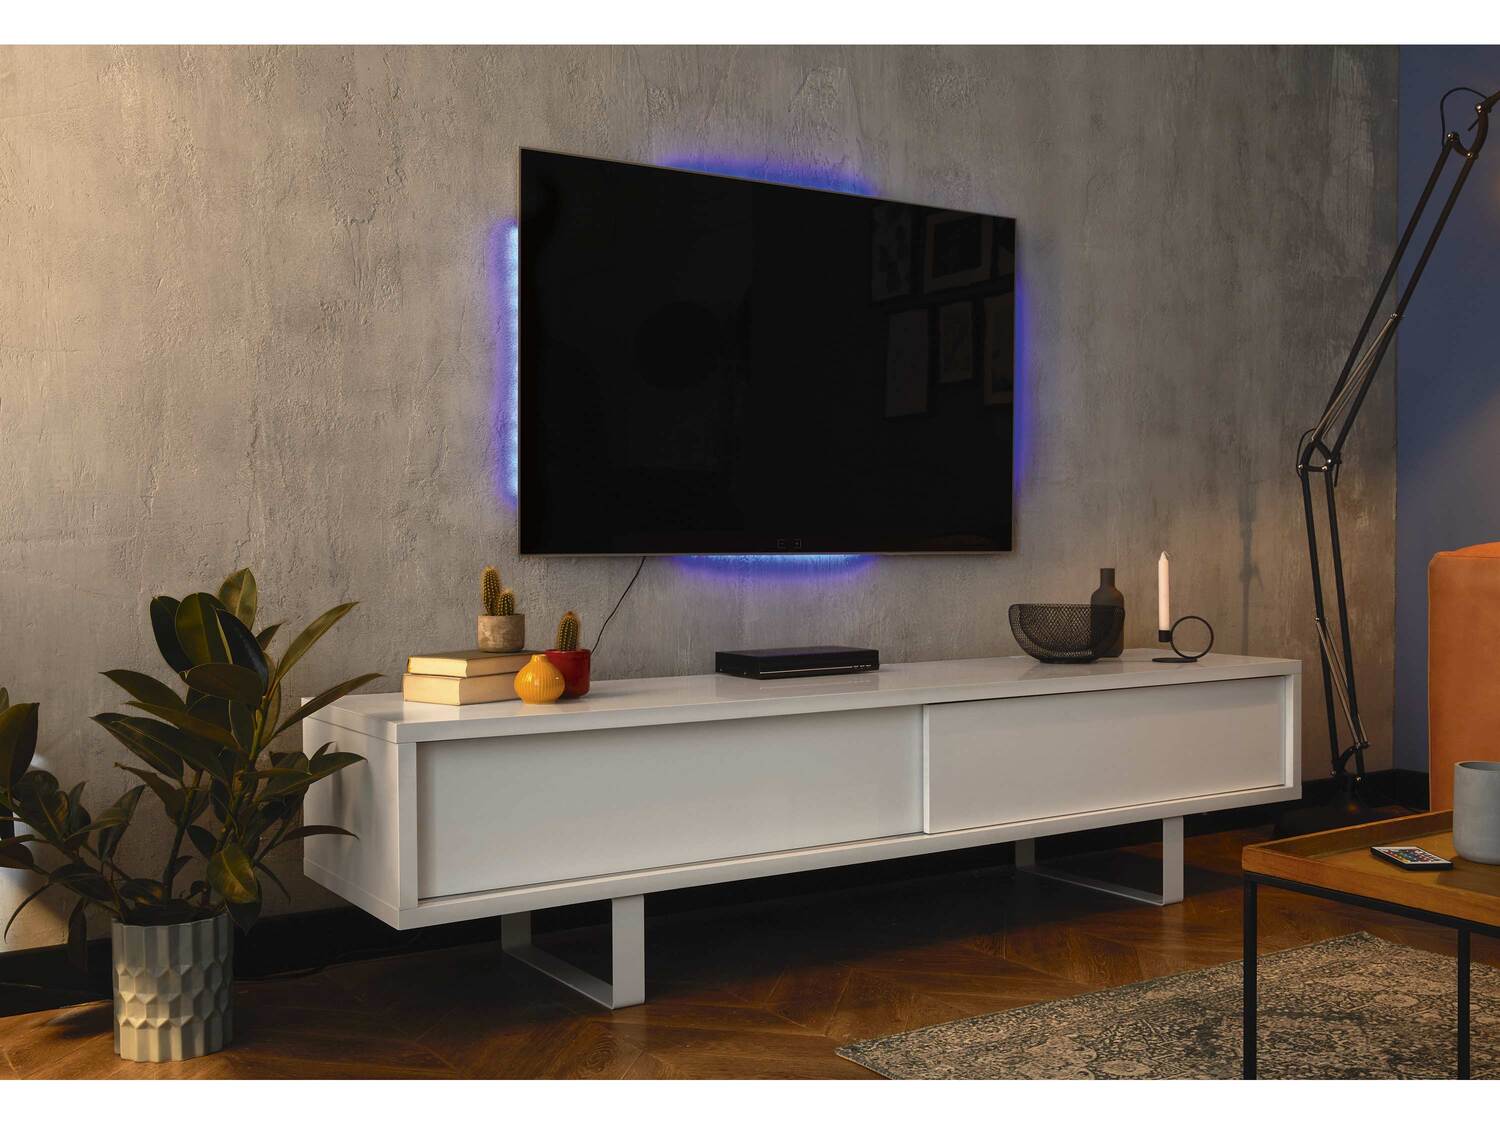 Oświetlenie LED panelu telewizora Livarno, cena 34,99 PLN 
- 4 samoprzylepne taśmy ...